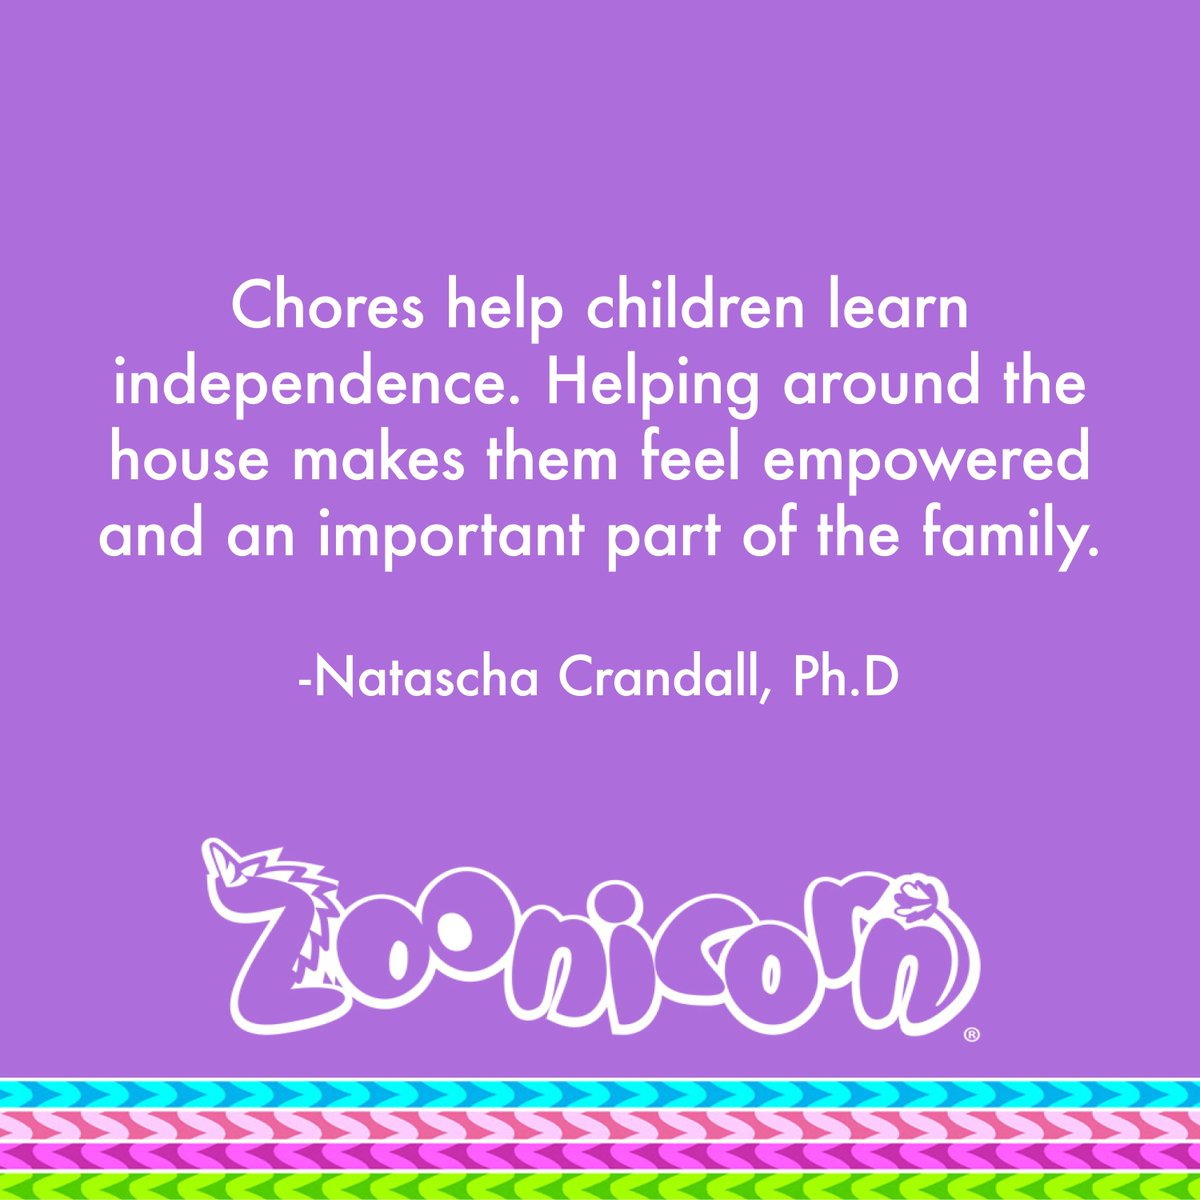 #Zoonicorn #kidzoonicorn #kidzunicorn #independence #gainingindependence
#SocialEmotionalLearning #EducationalCurriculum #Zooniverse #unicornio
#bestfriends #babyunicorn